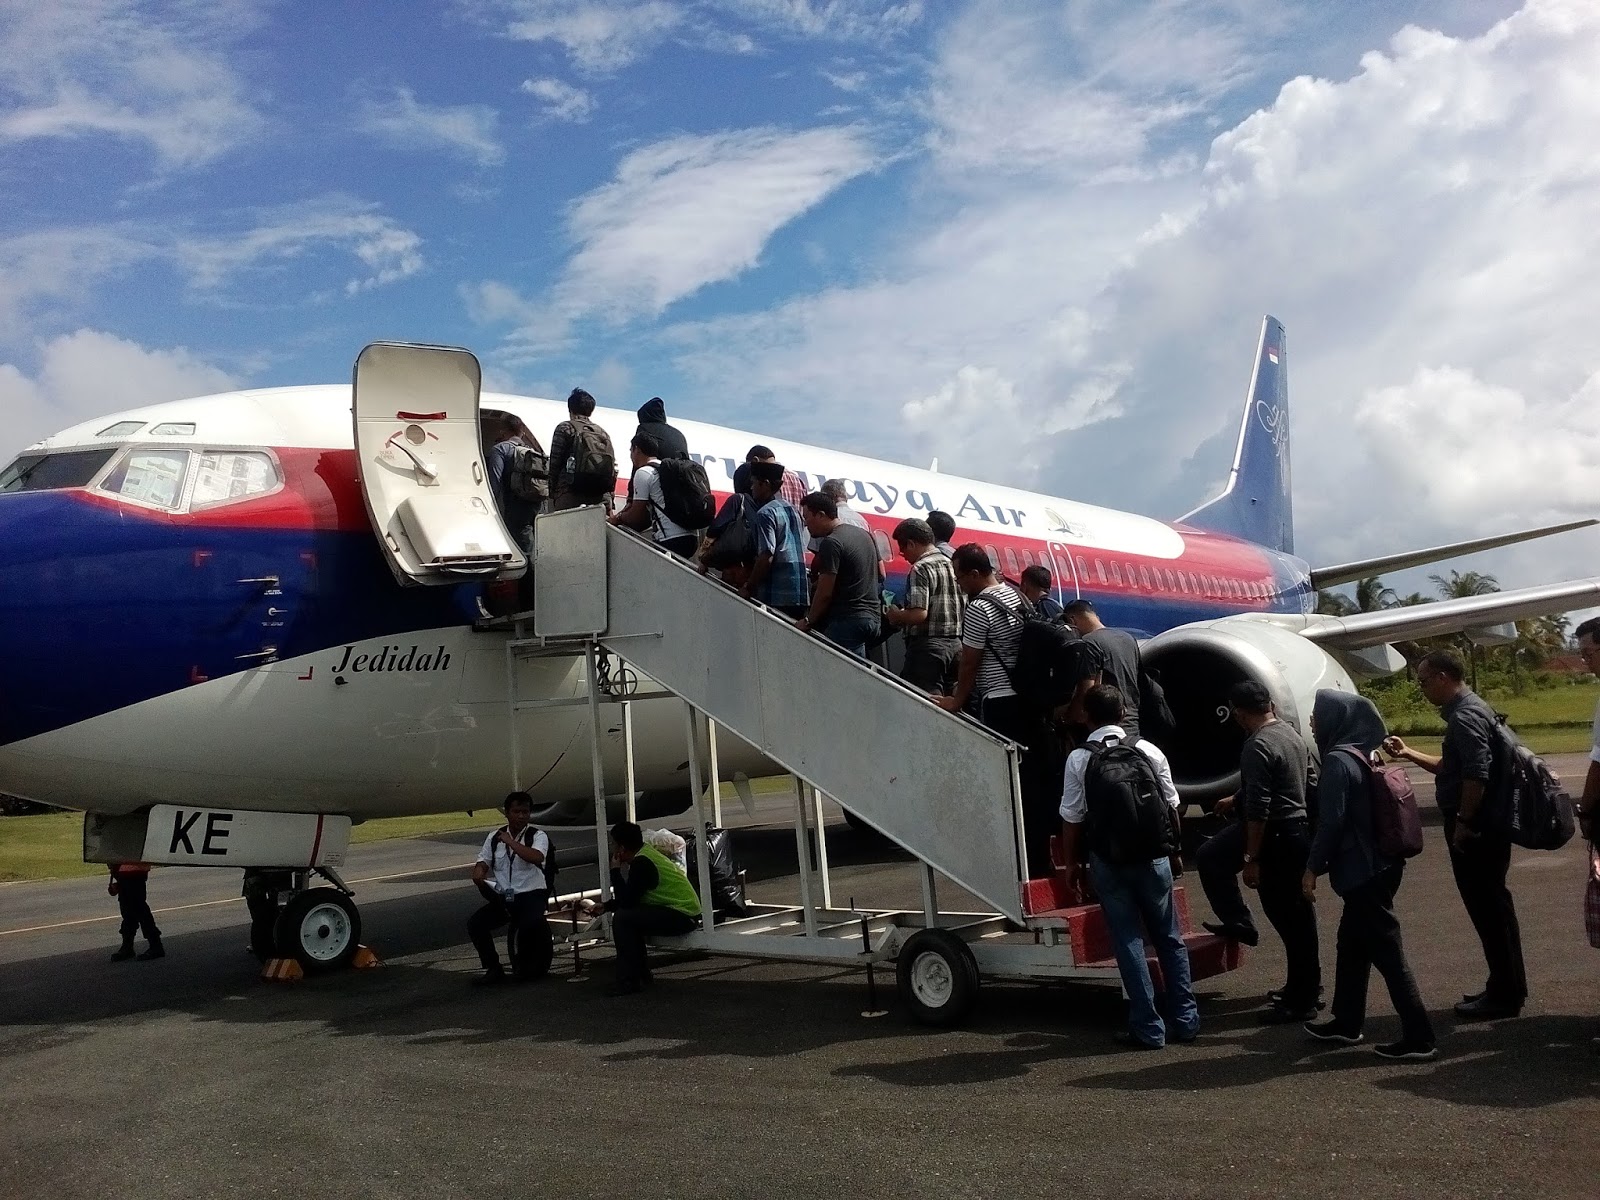 RANAI AIRPORT | Travel to Natuna Islands